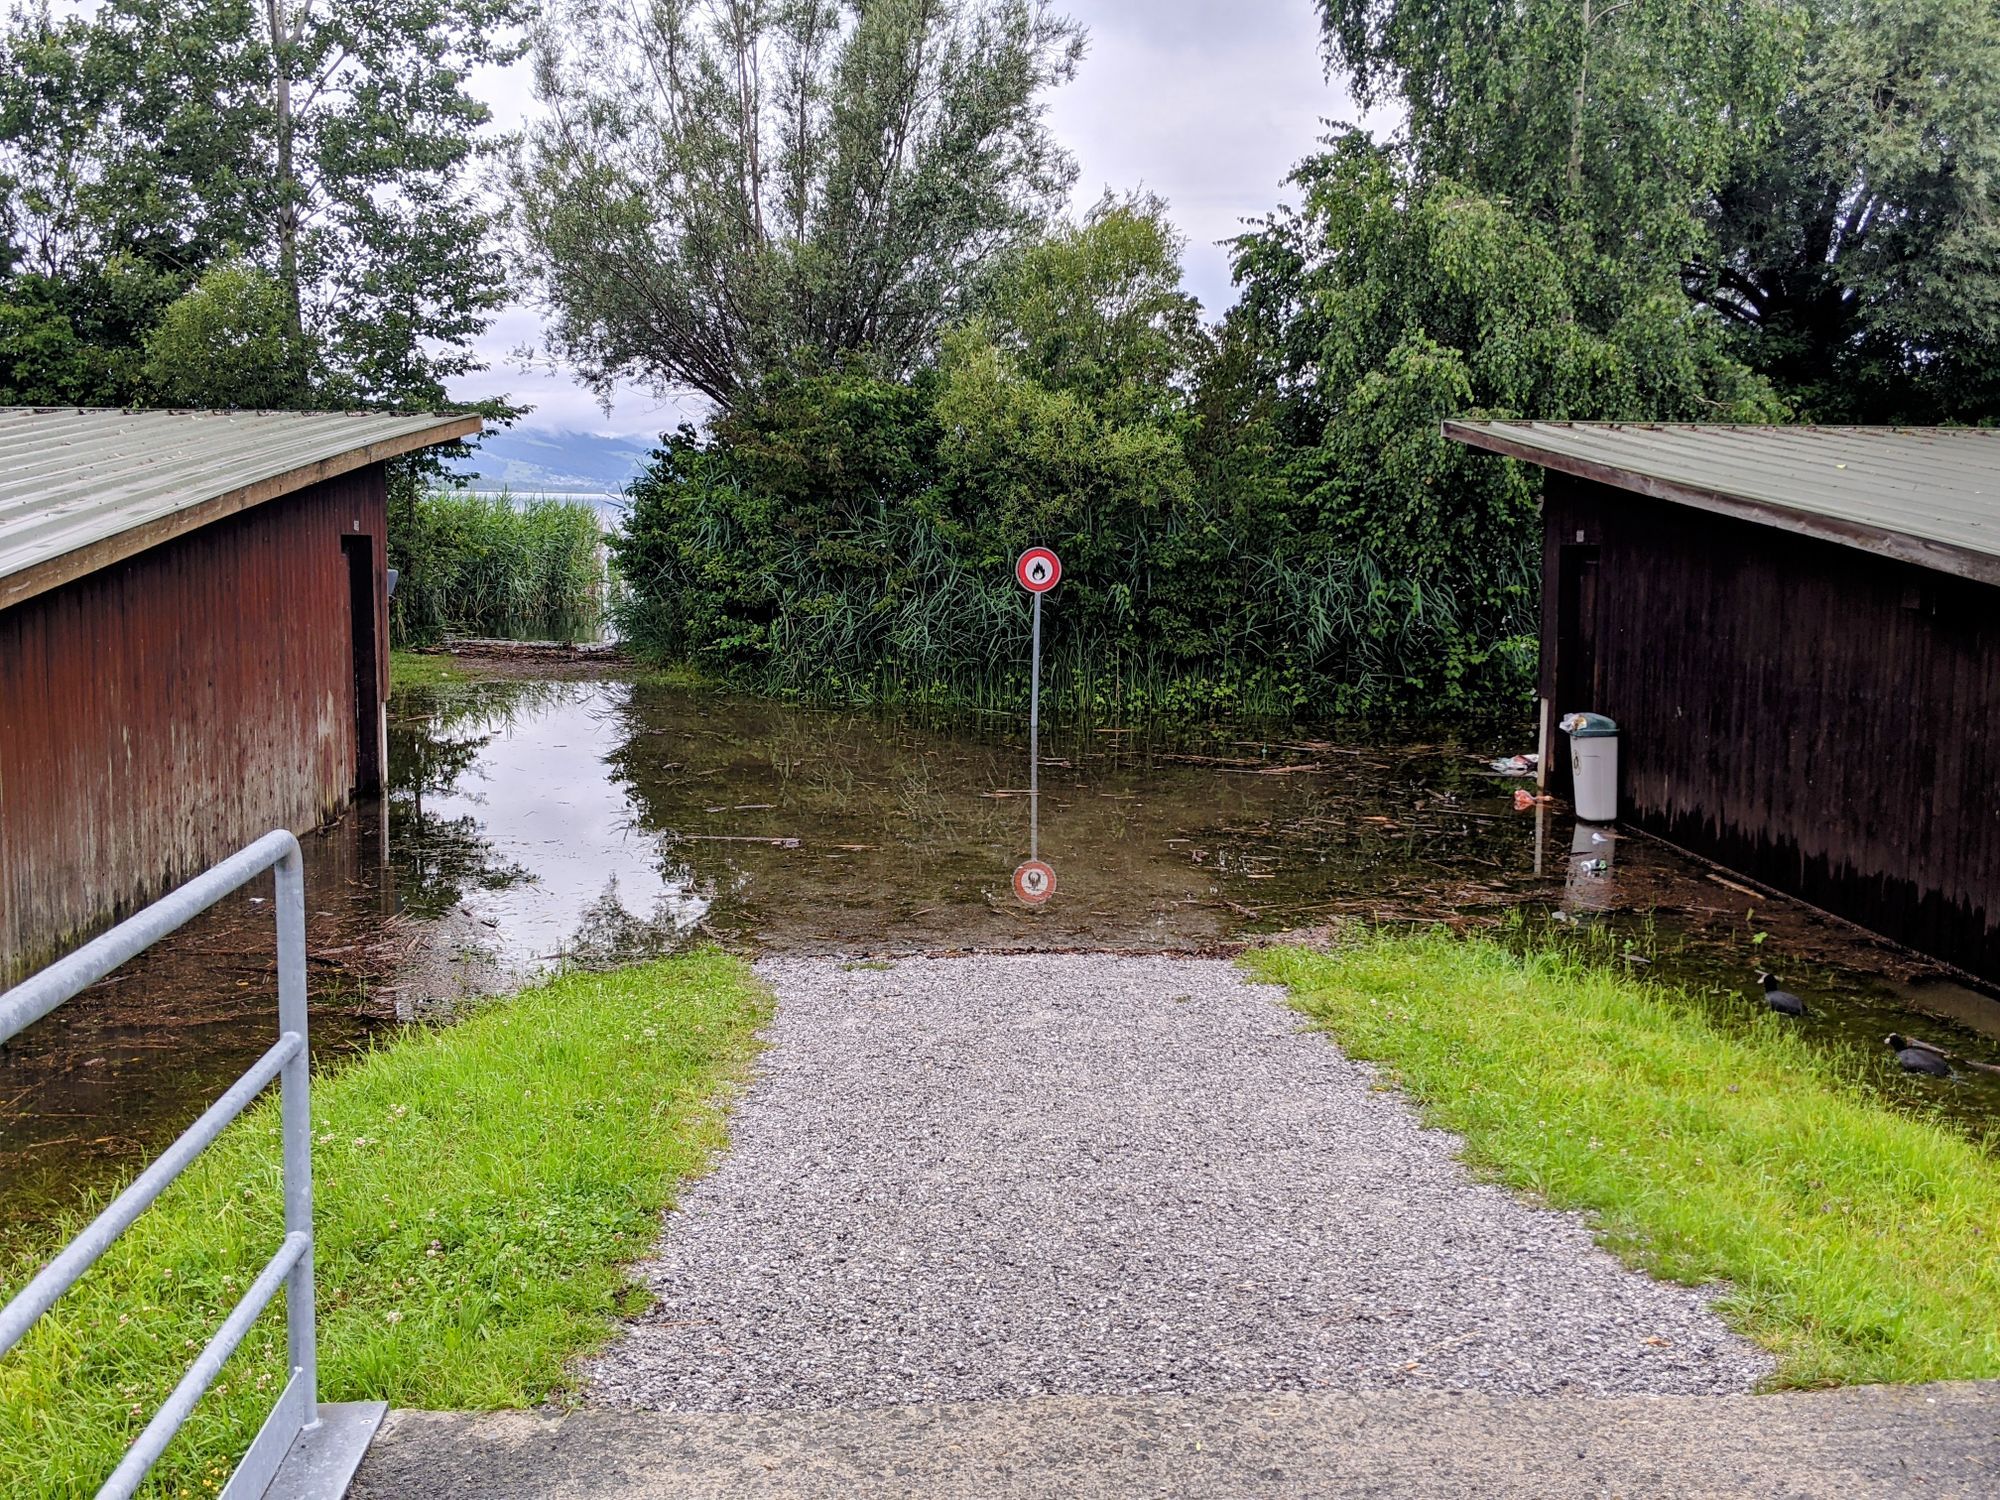 Hochwasser beim Hafen Rheinkies in Schmerikon am 13.07.2021 (Foto: Thomas Müller, 8716.ch)